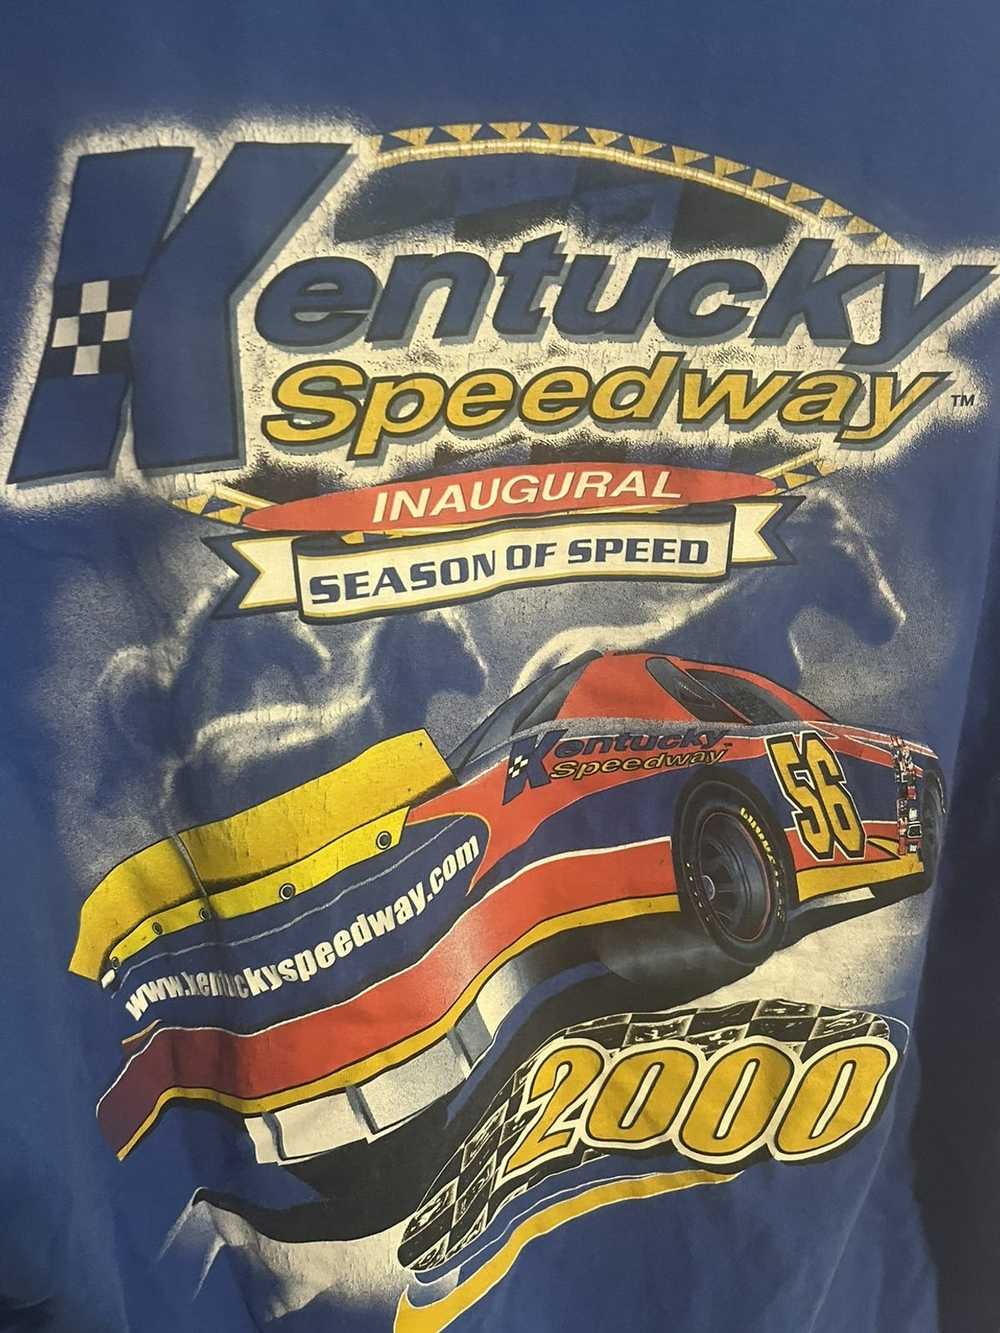 Hanes Kentucky speedway T-shirt - image 2